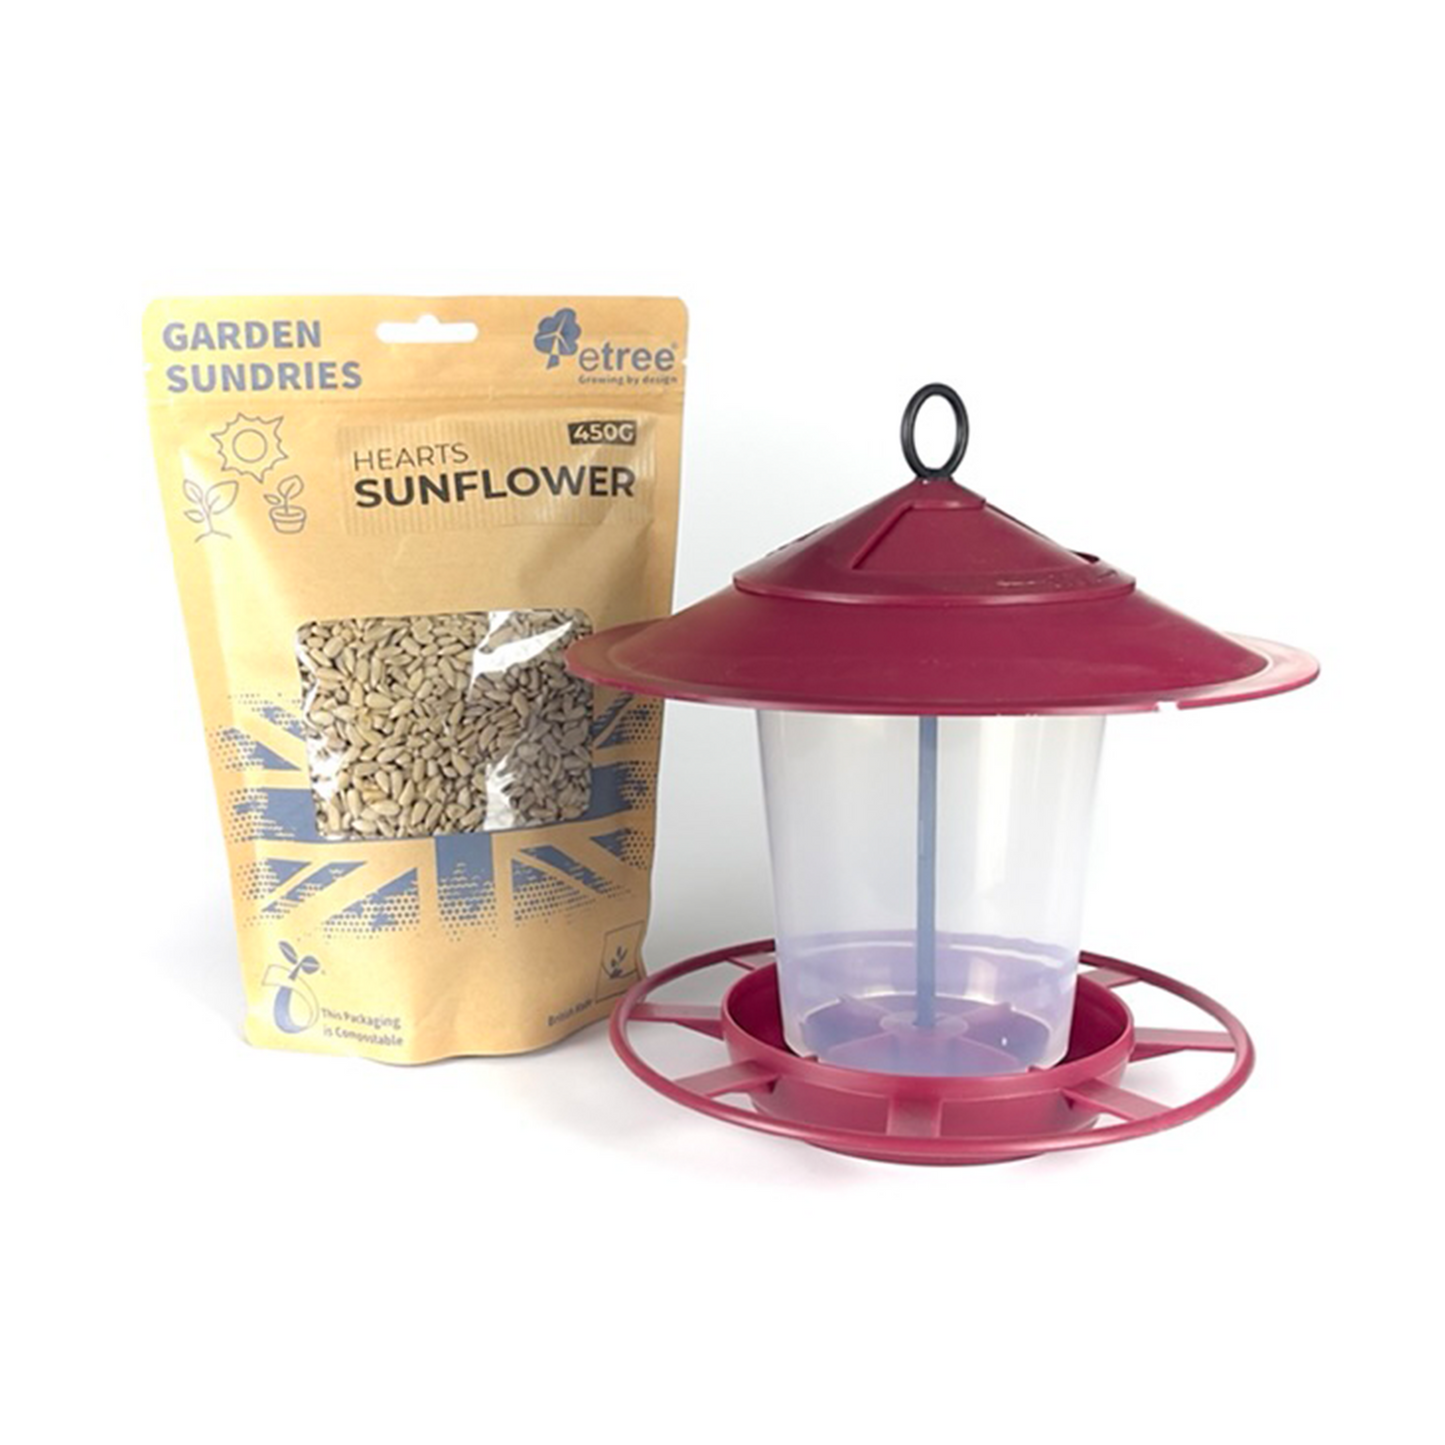 Pre Filled Hanging Lantern Bird Feeder Gift Set & Sunflower Hearts Wild Bird Seed (450g)